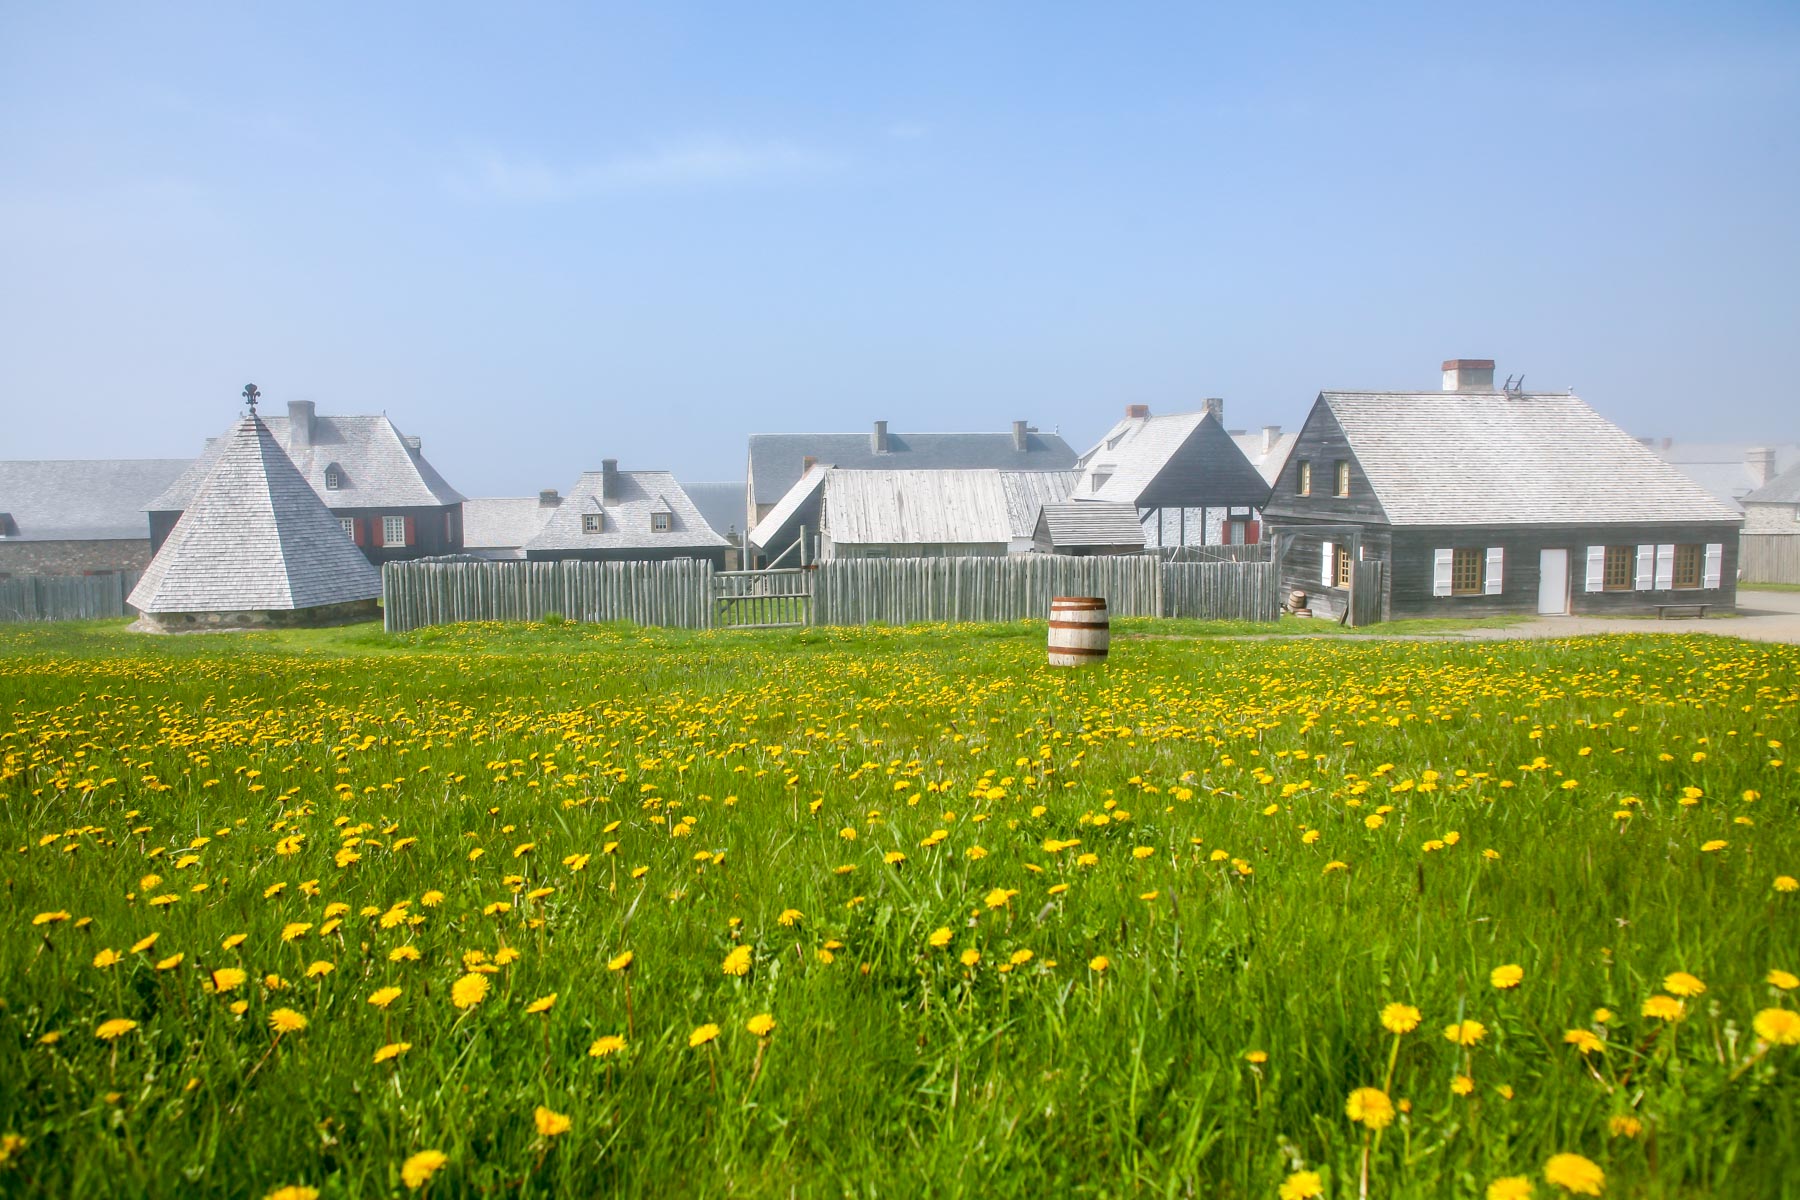 Vue d’ensemble de la Forteresse-de-Louisbourg avec un champ parsemé de fleurs jaunes à l’avant-plan.